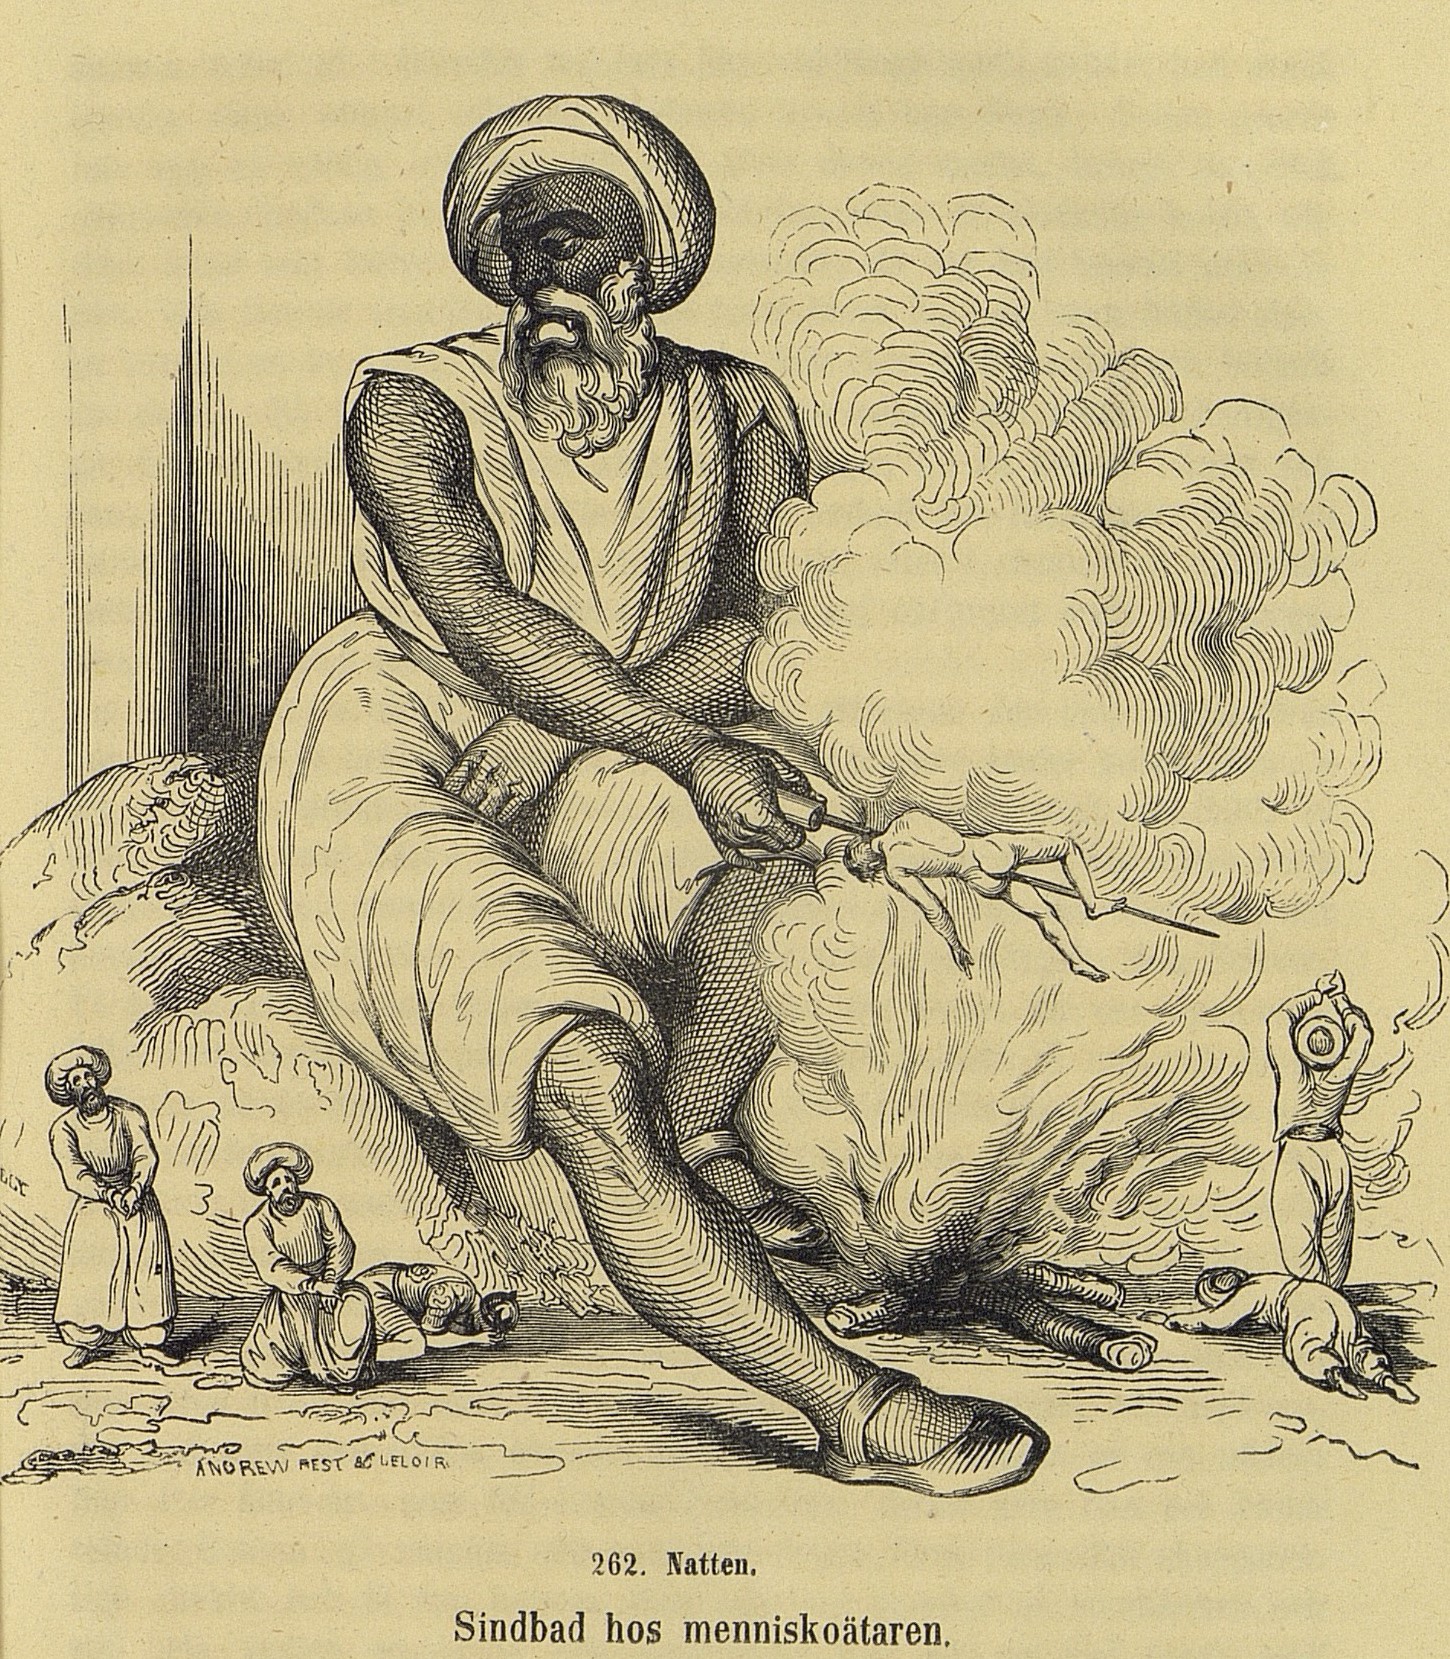 En enögd jätte med turban grillar kaptenen på ett spett över elden. Fem människor i turban vädjar förtvivlat till jätten.